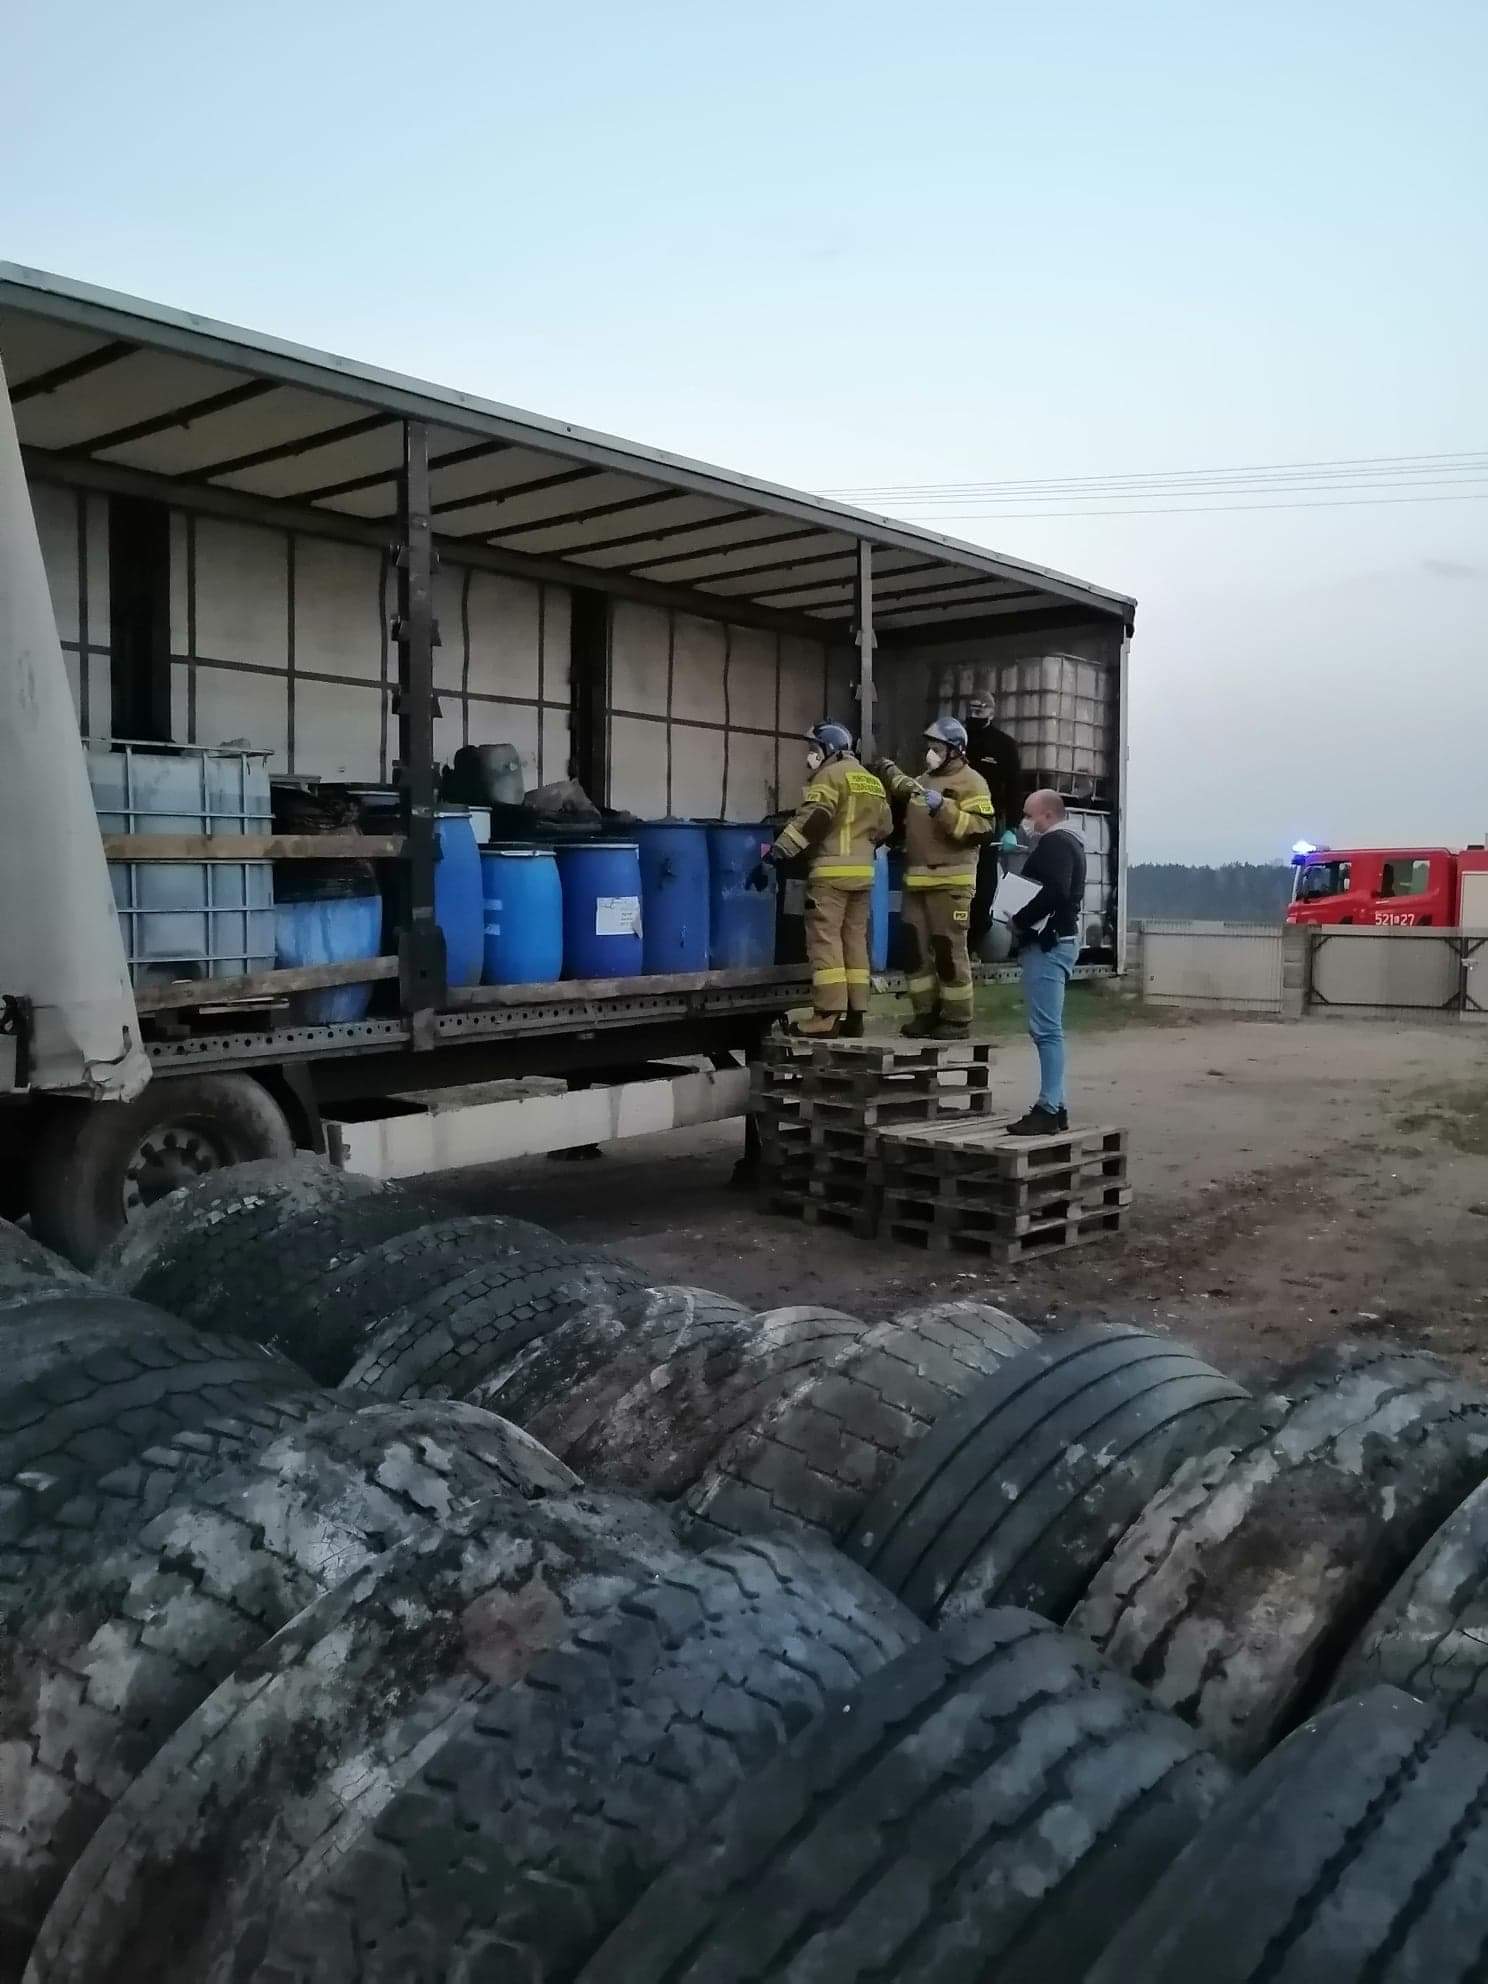 Niezidentyfikowane substancje w plastikowych pojemnikach, interweniowali strażacy (zdjęcia)